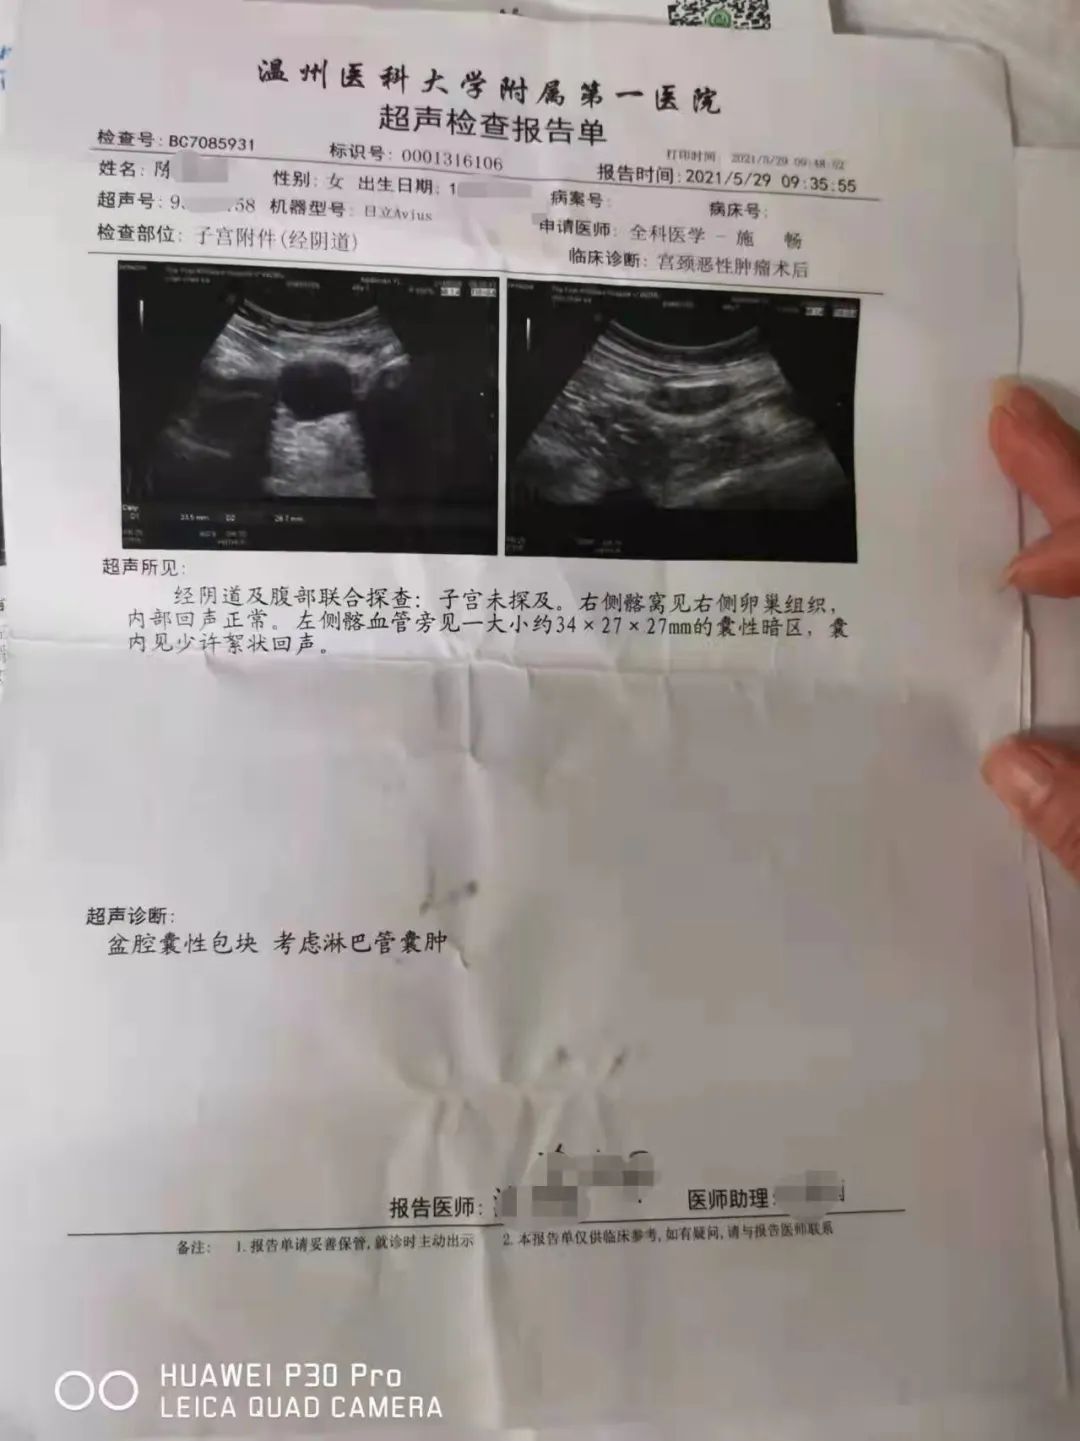 而陈女士提供的由温州医科大学附属第一医院出具的《超声检查报告单》